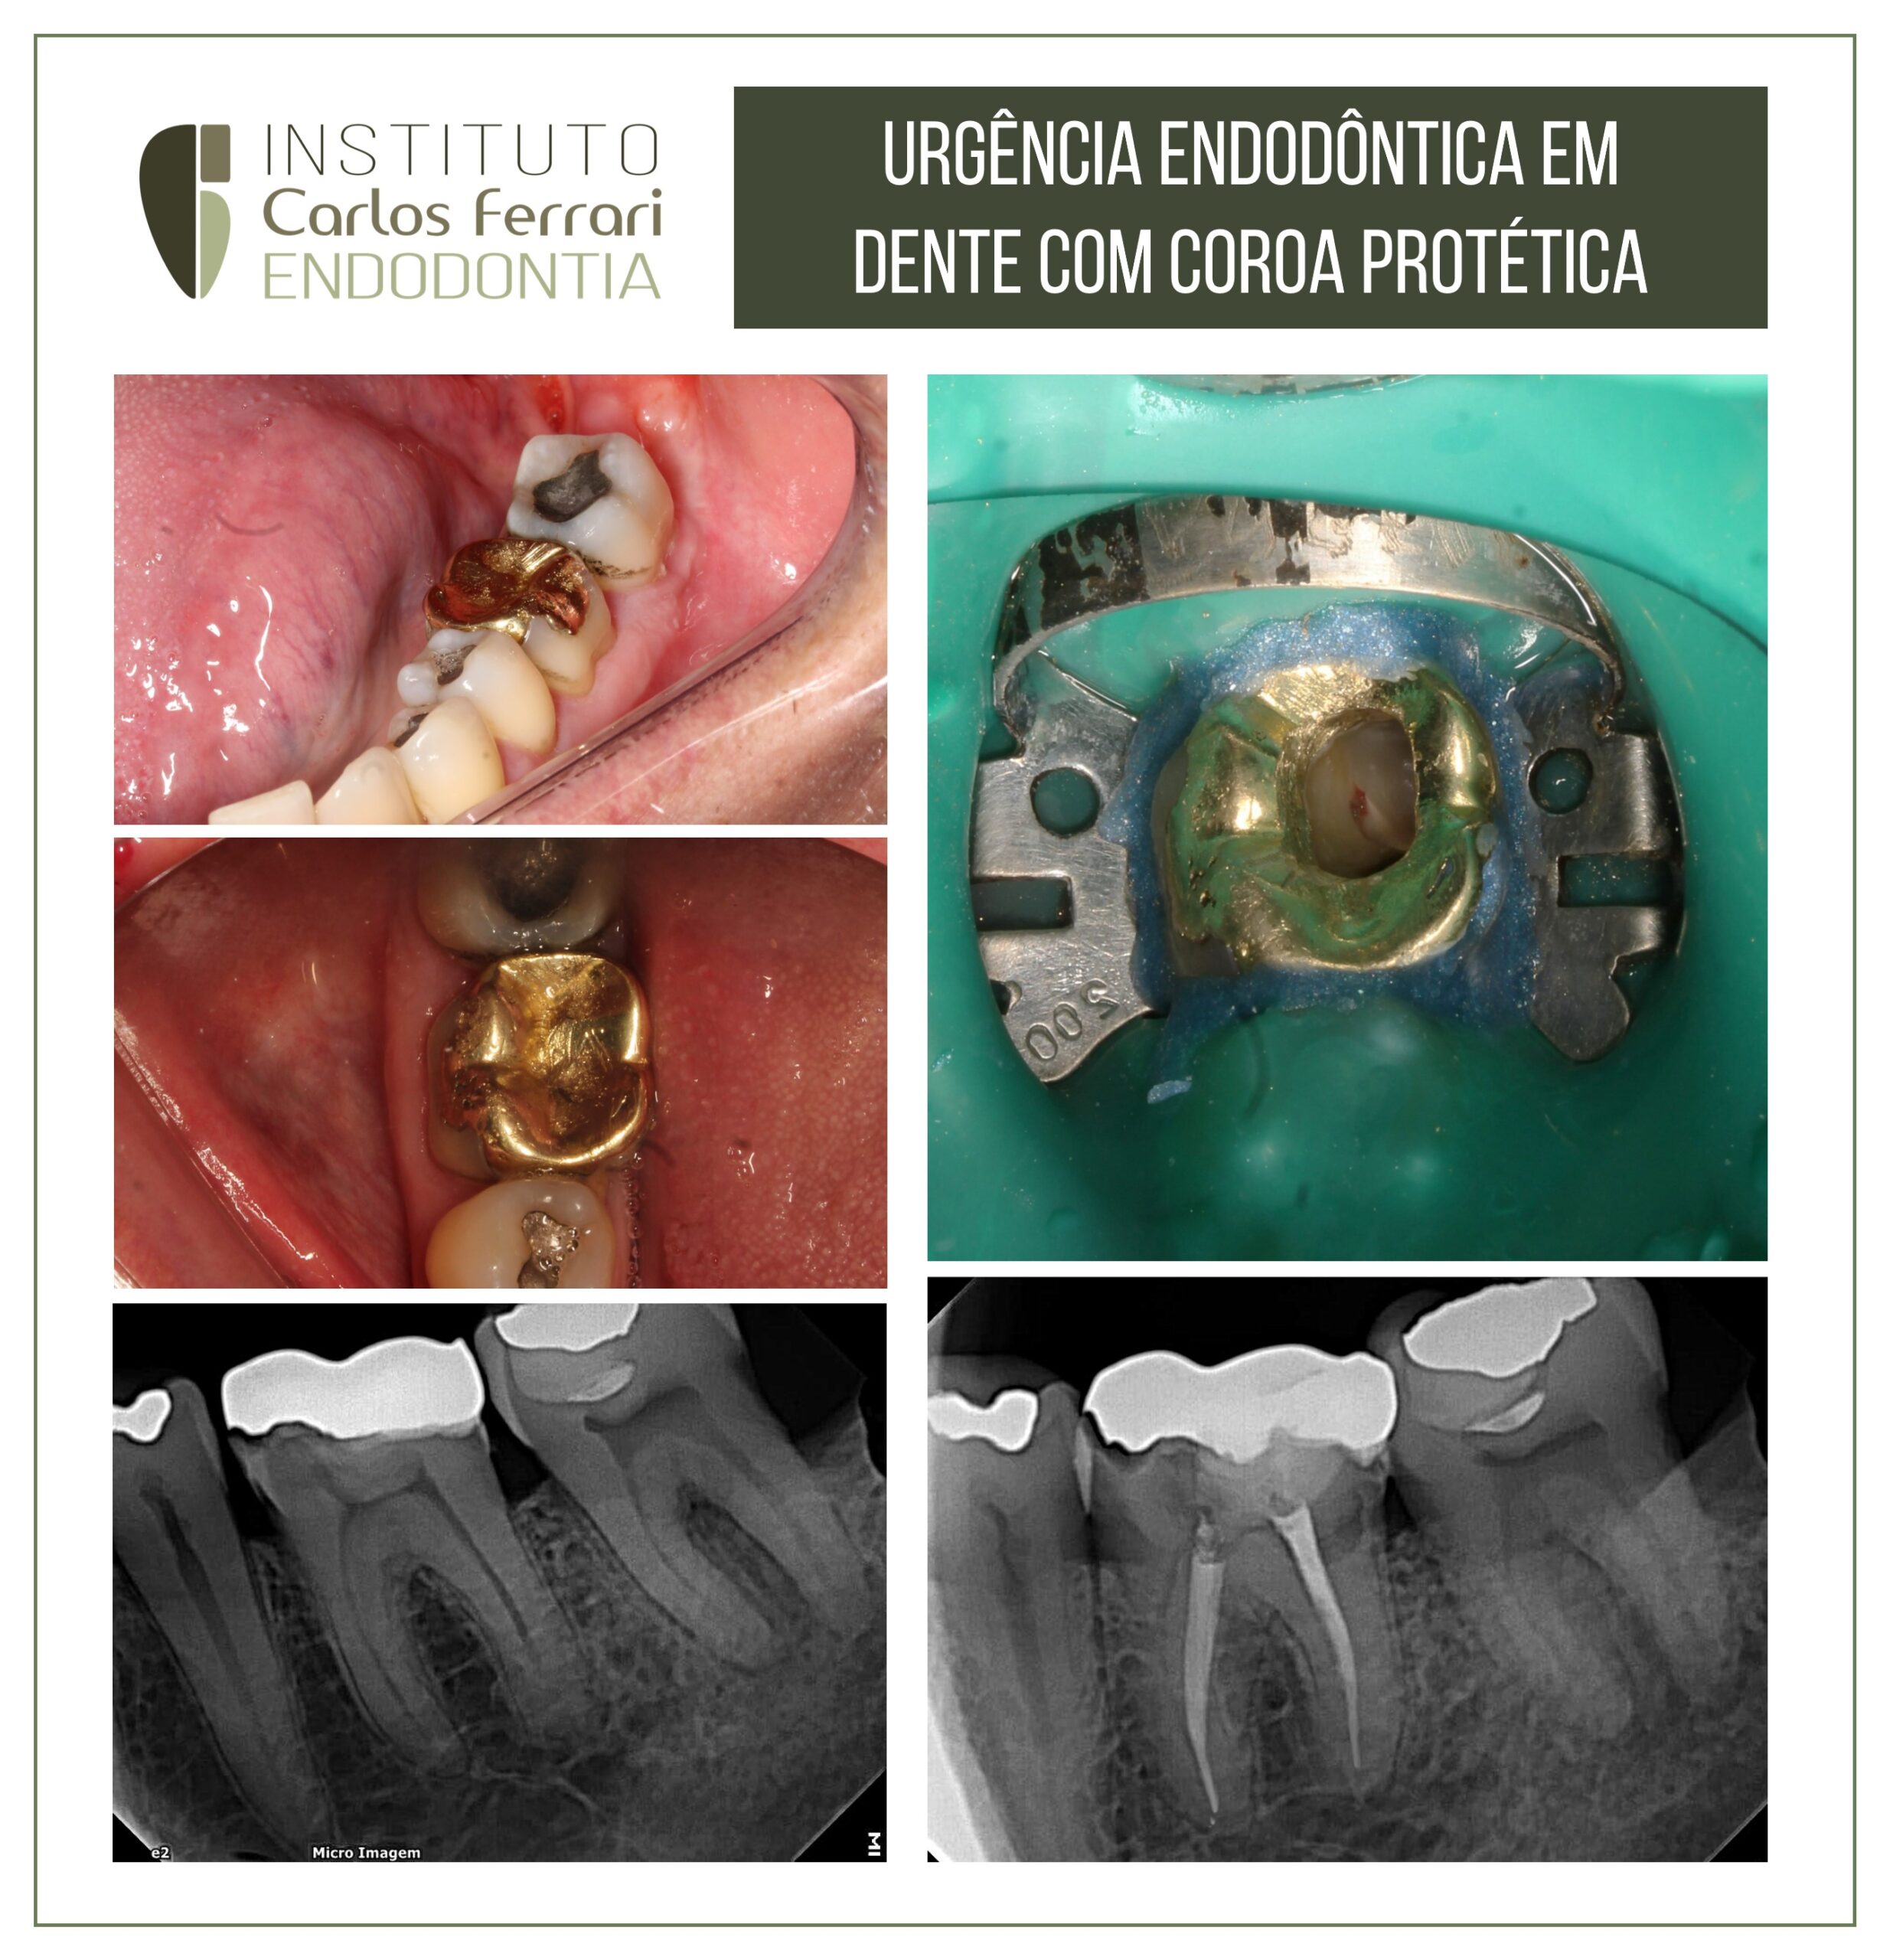 You are currently viewing Urgência endodôntica em molar com coroa metálica.